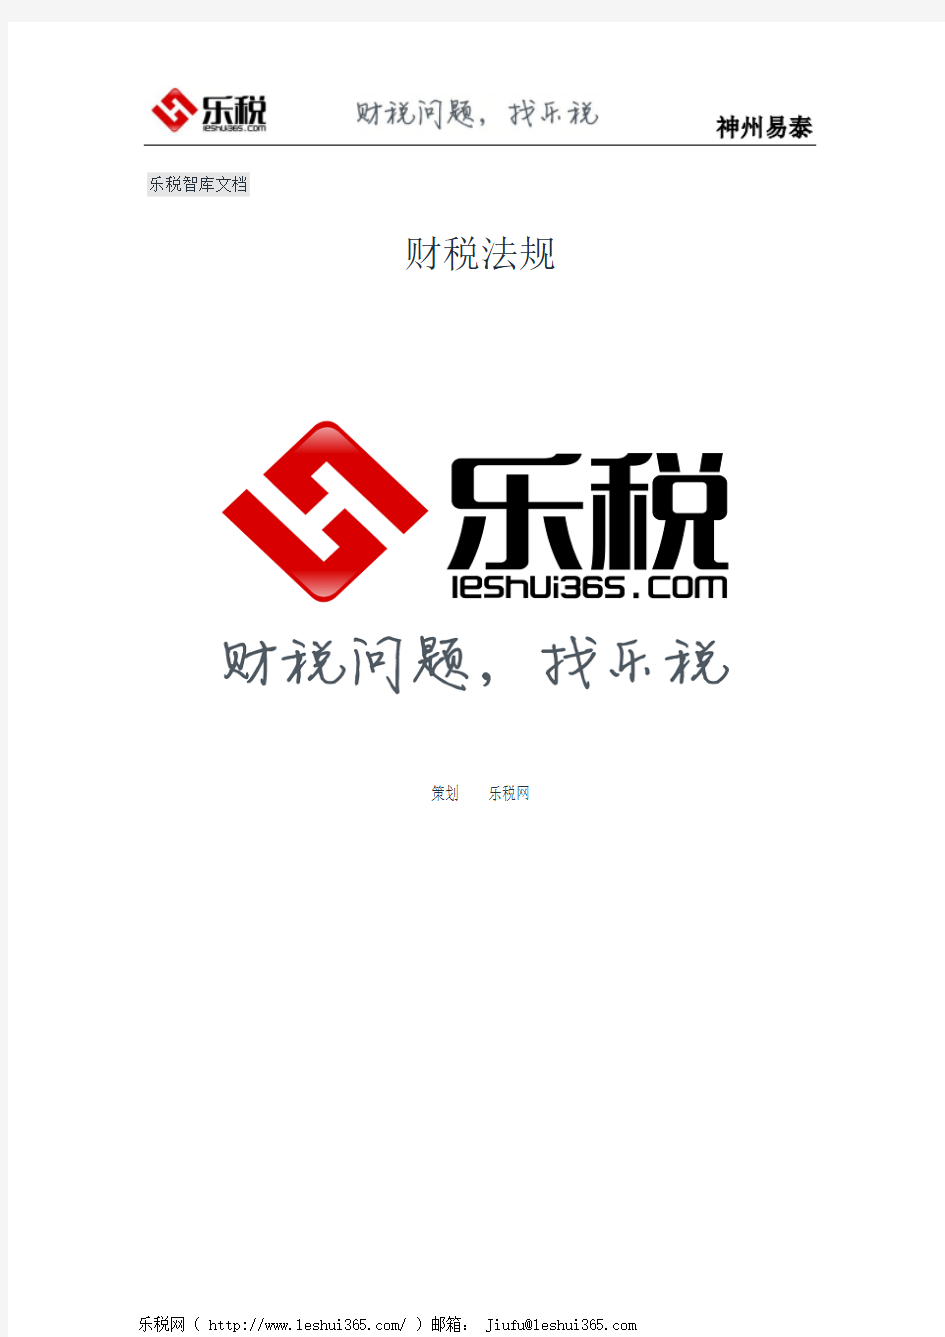 北京市国家税务局关于北京市全面推广口岸数据执法系统出口退税子